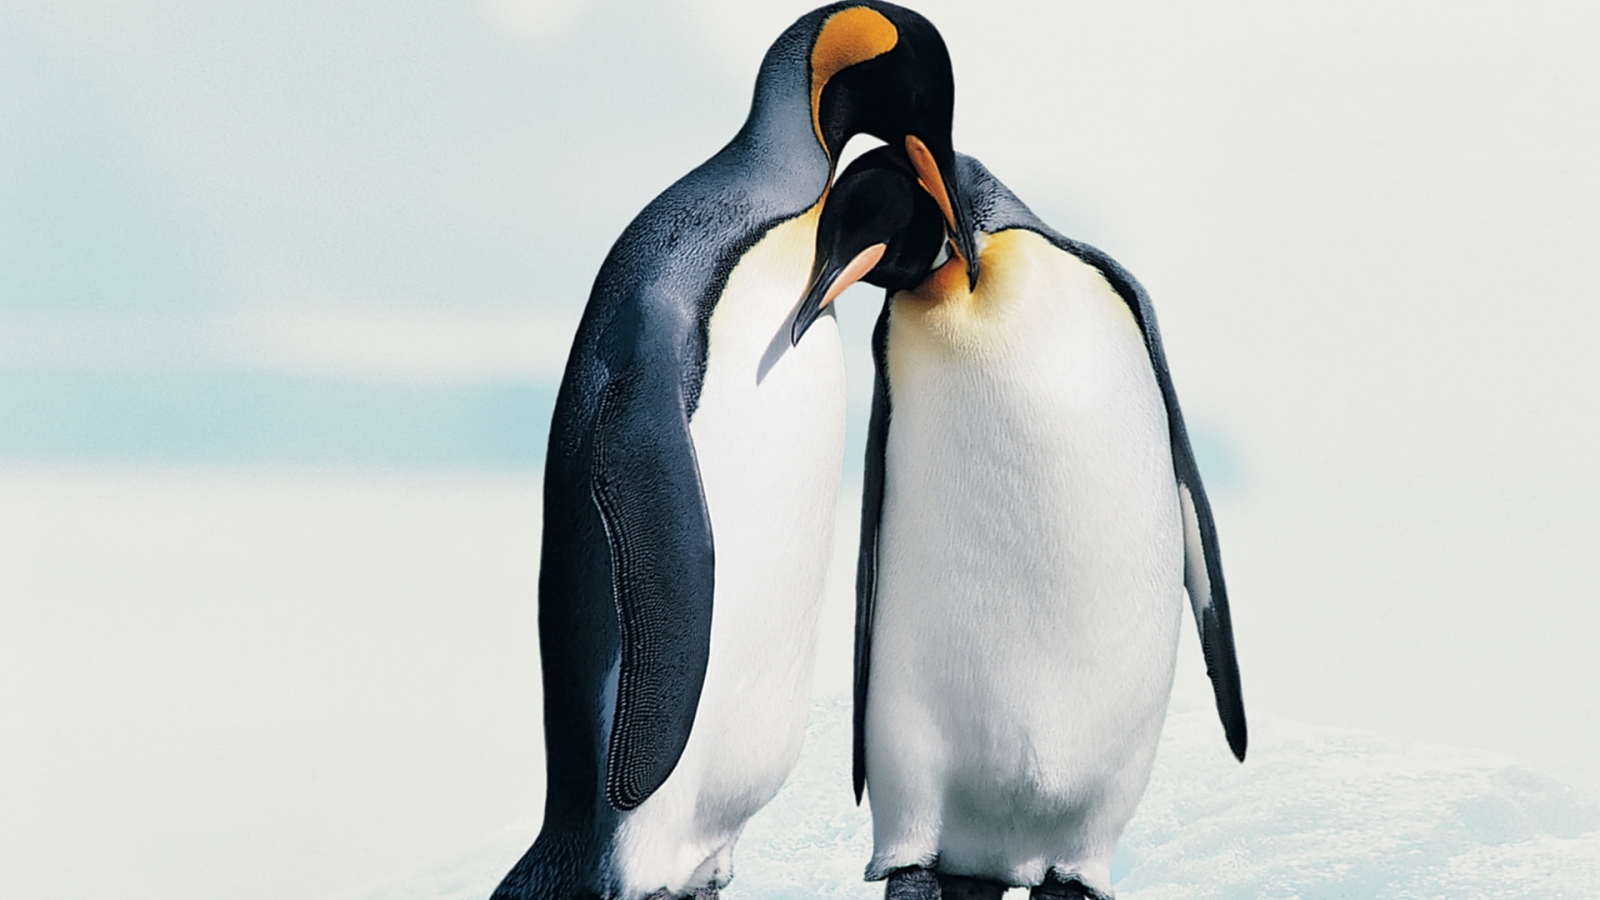 Penguins in Love for 1600 x 900 HDTV resolution